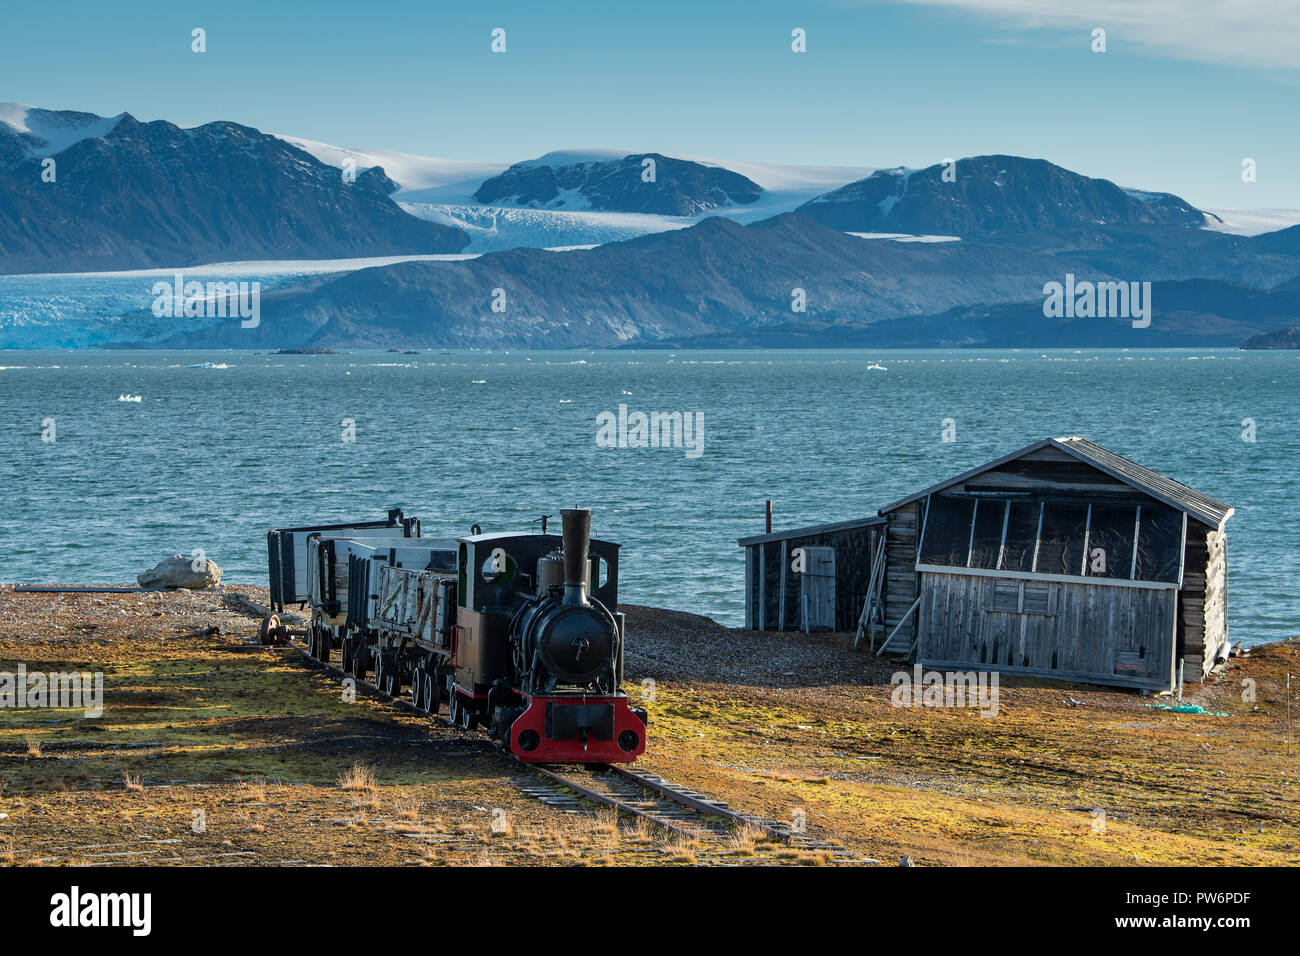 Le train de la mine historique en face de l'Kongsfjorden, Ny-Alesund, Spitsbergen, Svalbard, îles Svalbard et Jan Mayen (Norvège) Banque D'Images